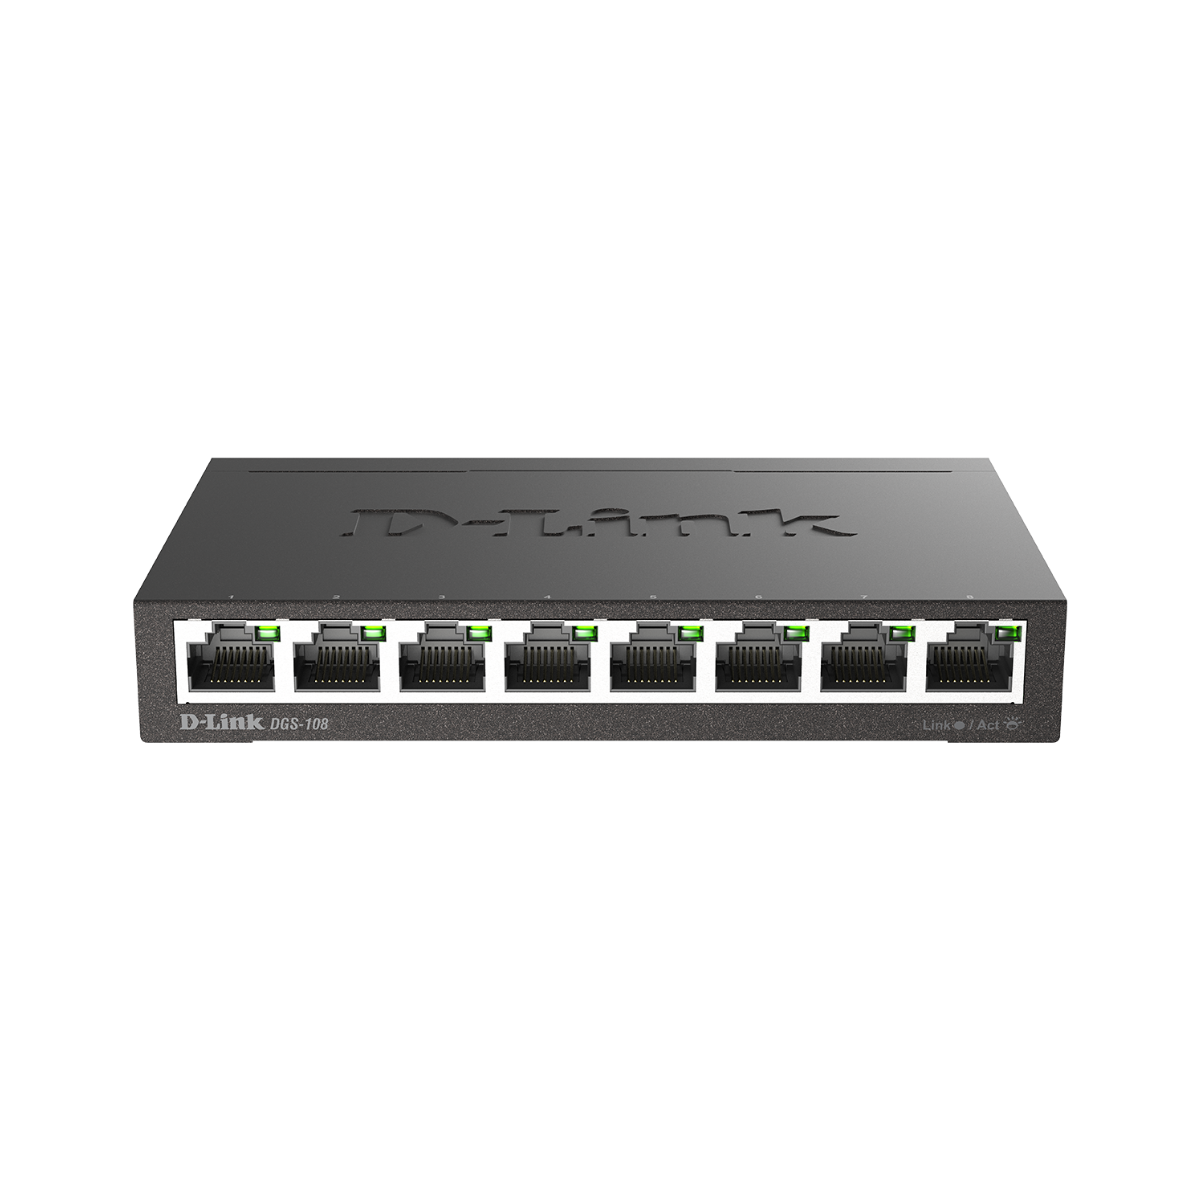 Matériels: Switch de bureau rackable 8 ports Gigabit PoE TL-SG1008PE